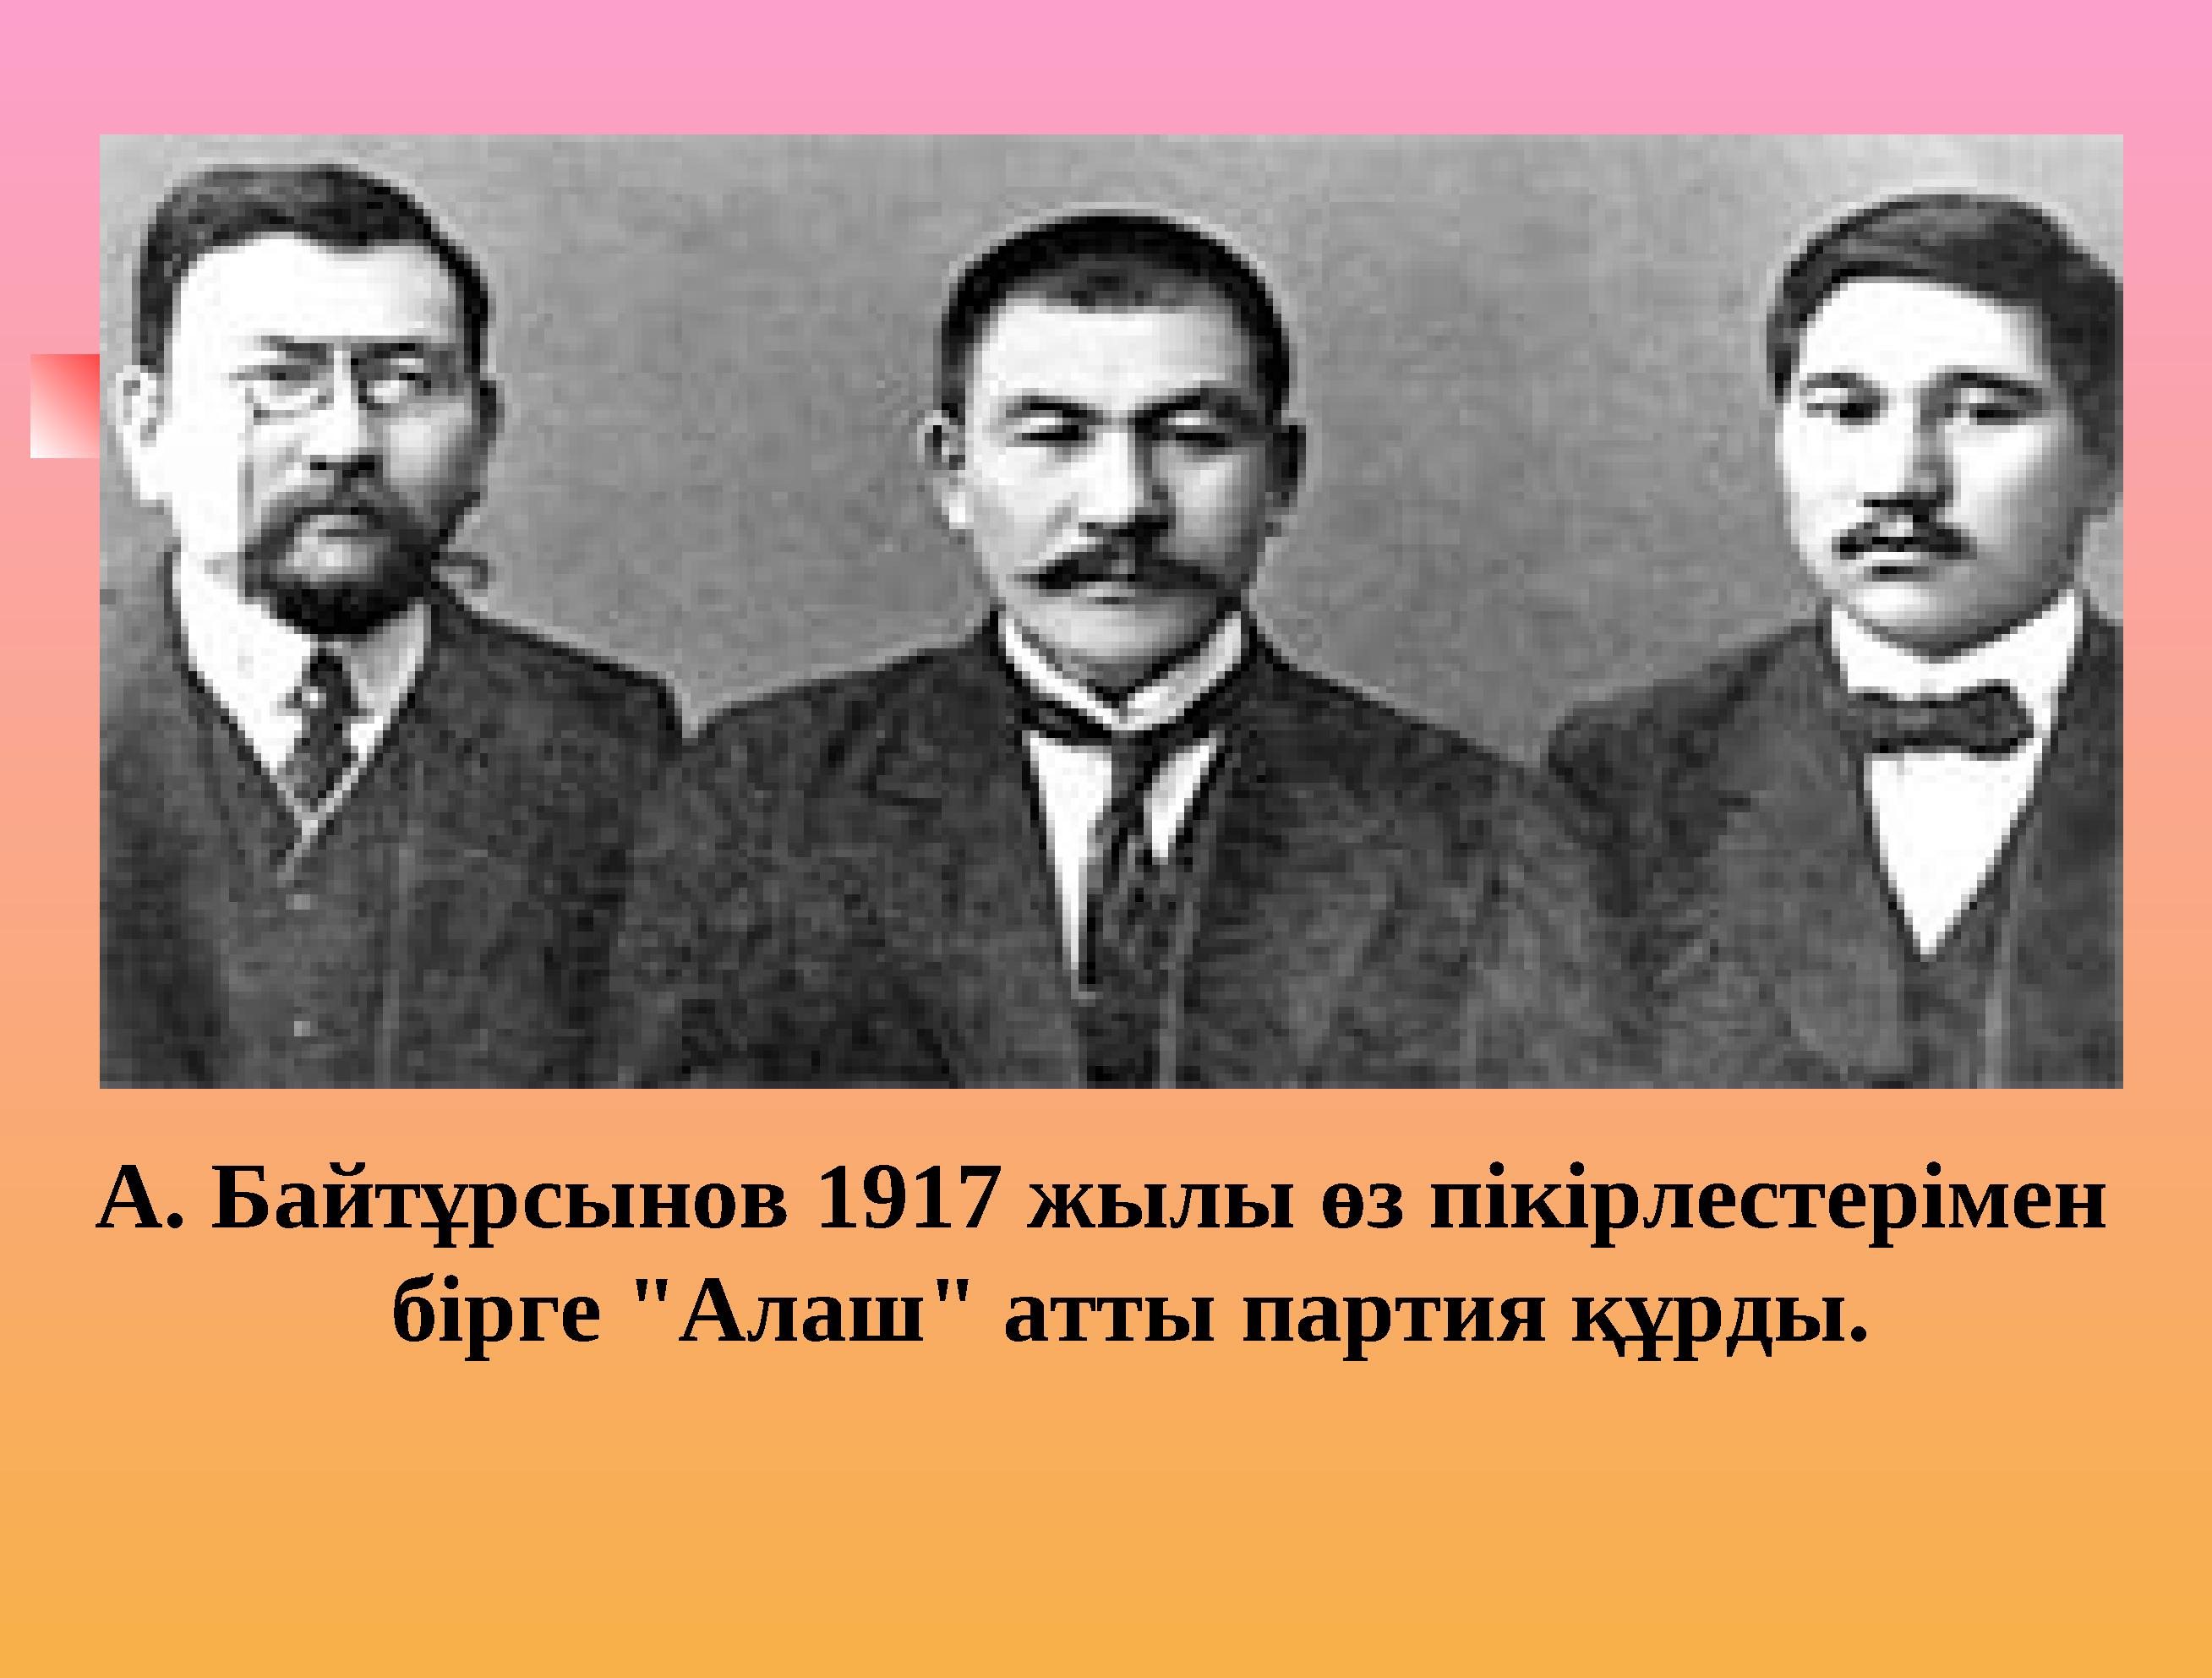 А. Байтұрсынов 1917 жылы өз пікірлестерімен бірге "Алаш" атты партия құрды.